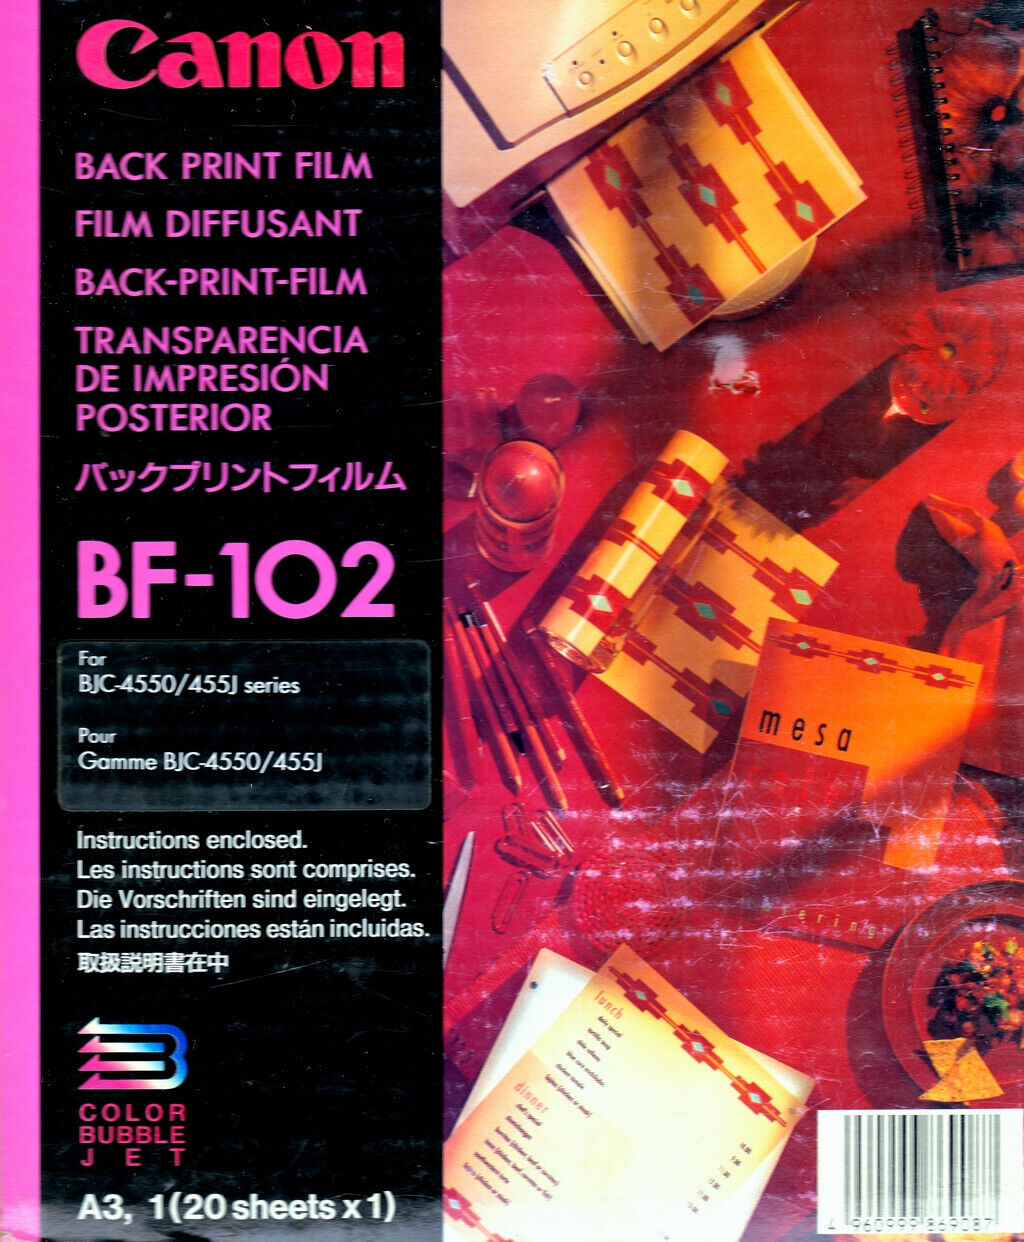 CANON BF-102 pellicola di stampa posteriore 20 fogli a4